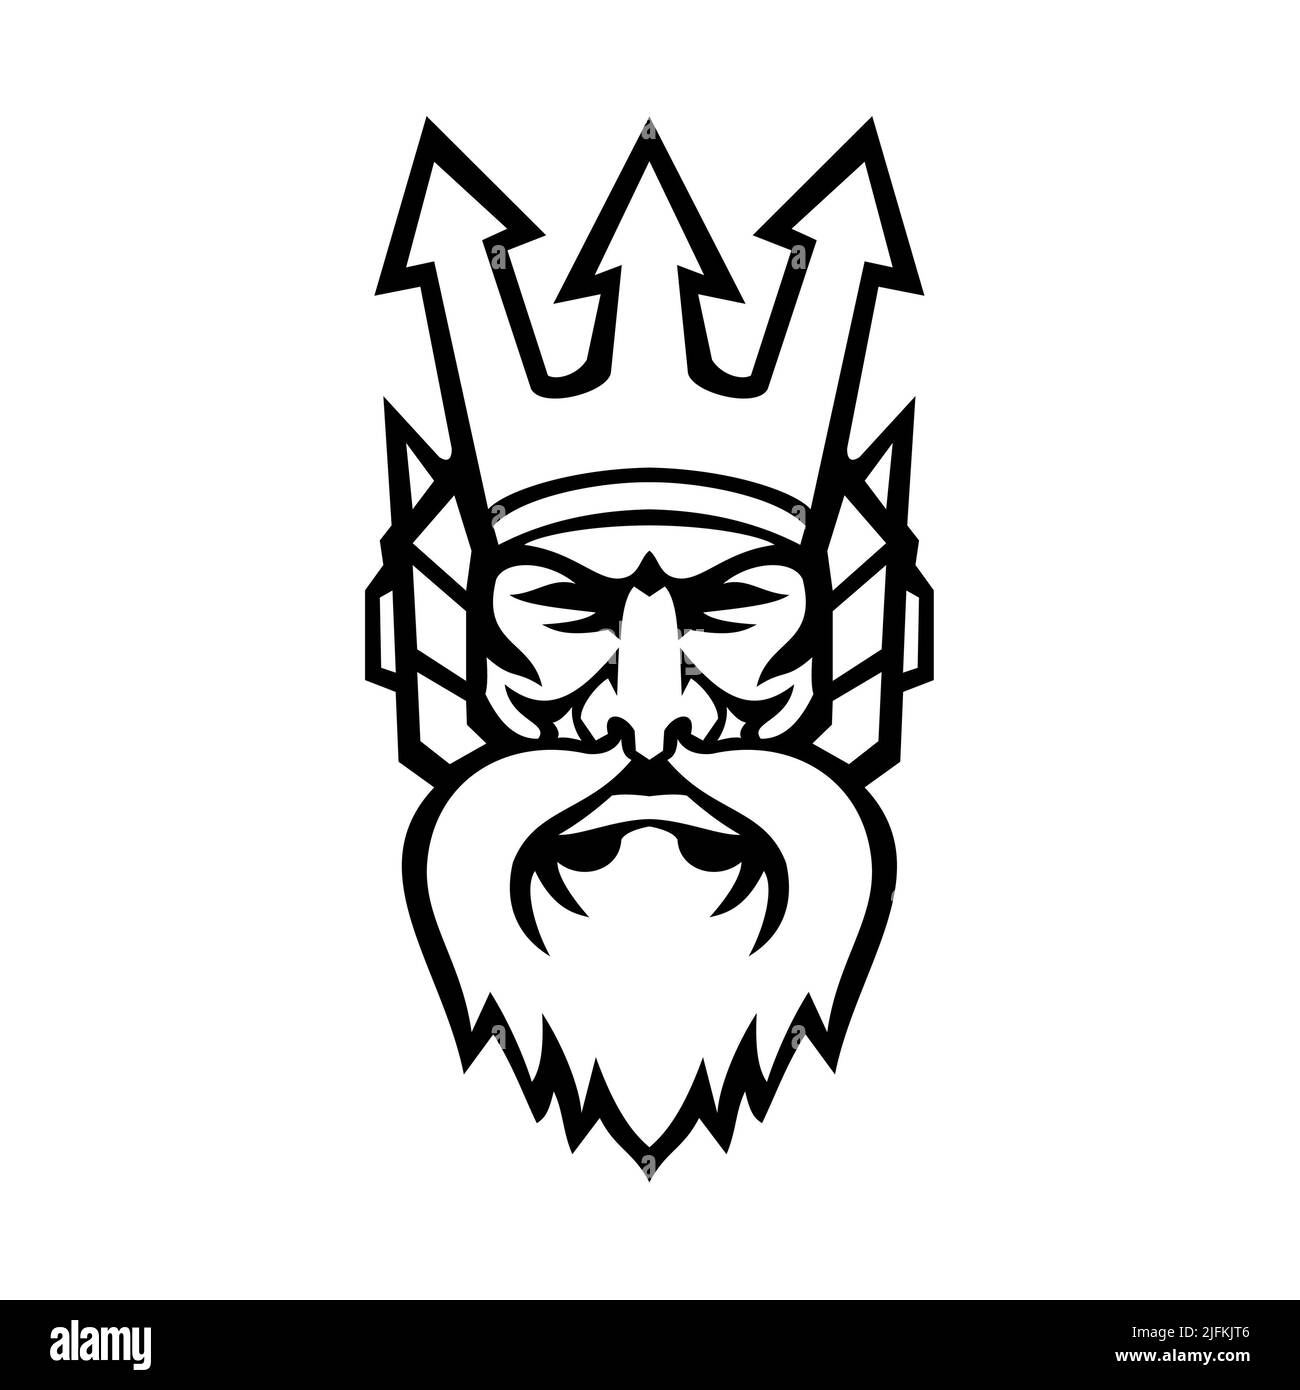 Ilustración de icono de la mascota de la cabeza de Poseidón, dios del Mar en la religión griega y el mito, con una corona tridente vista desde el frente en aislado Foto de stock